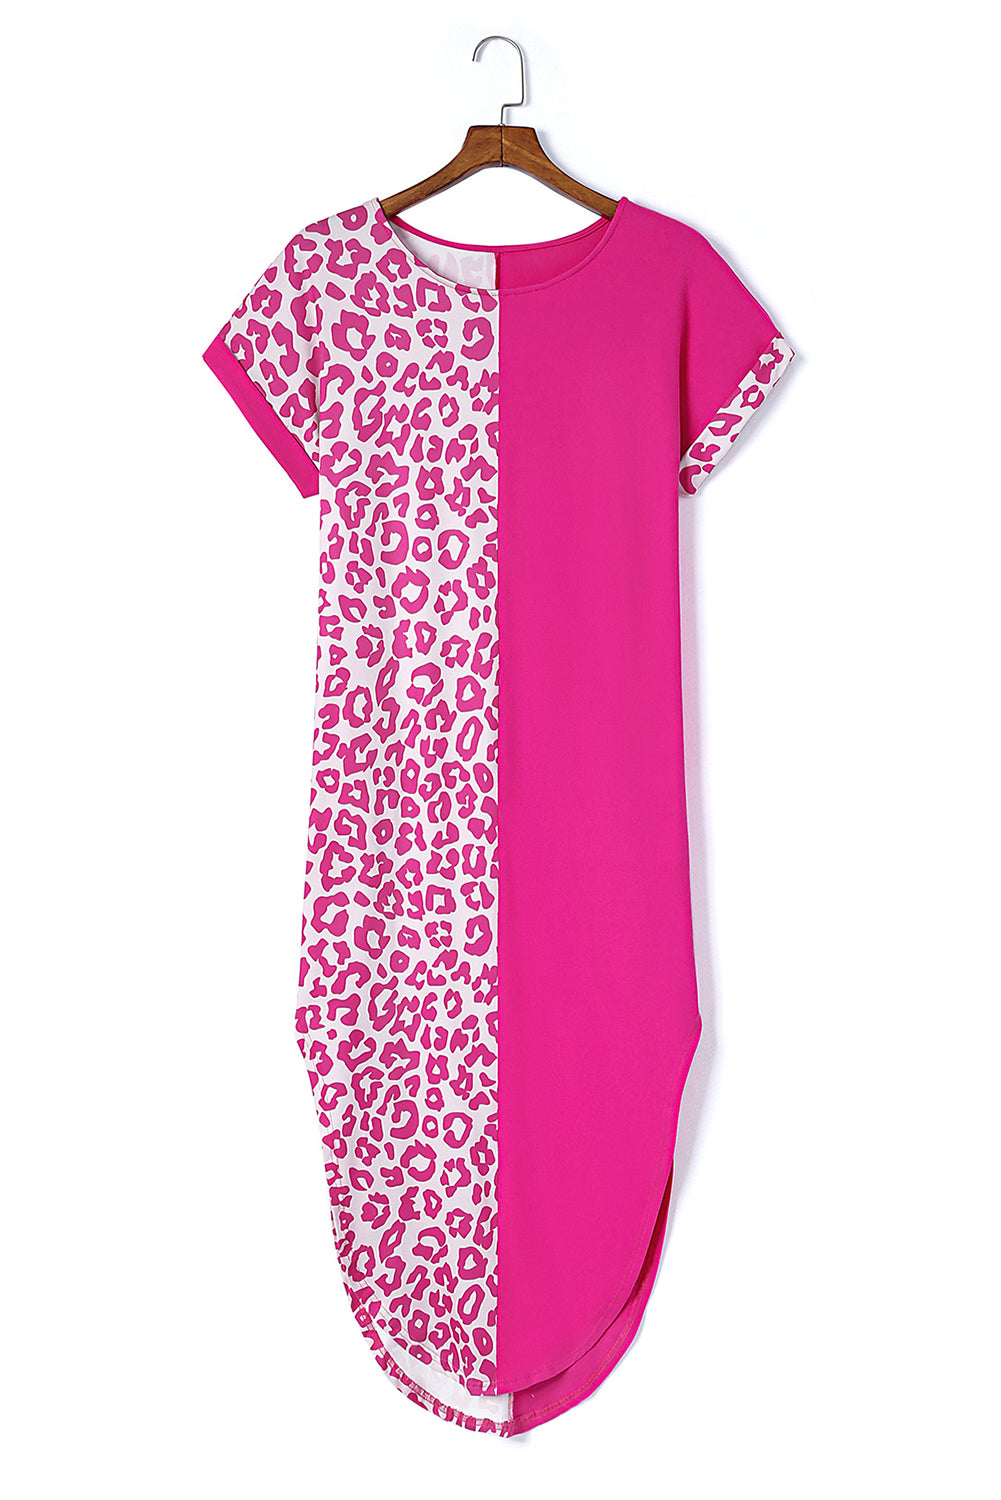 Rose Contrast Solid Leopard Short Sleeve T-shirt Dress with Slits T Shirt Dresses JT's Designer Fashion